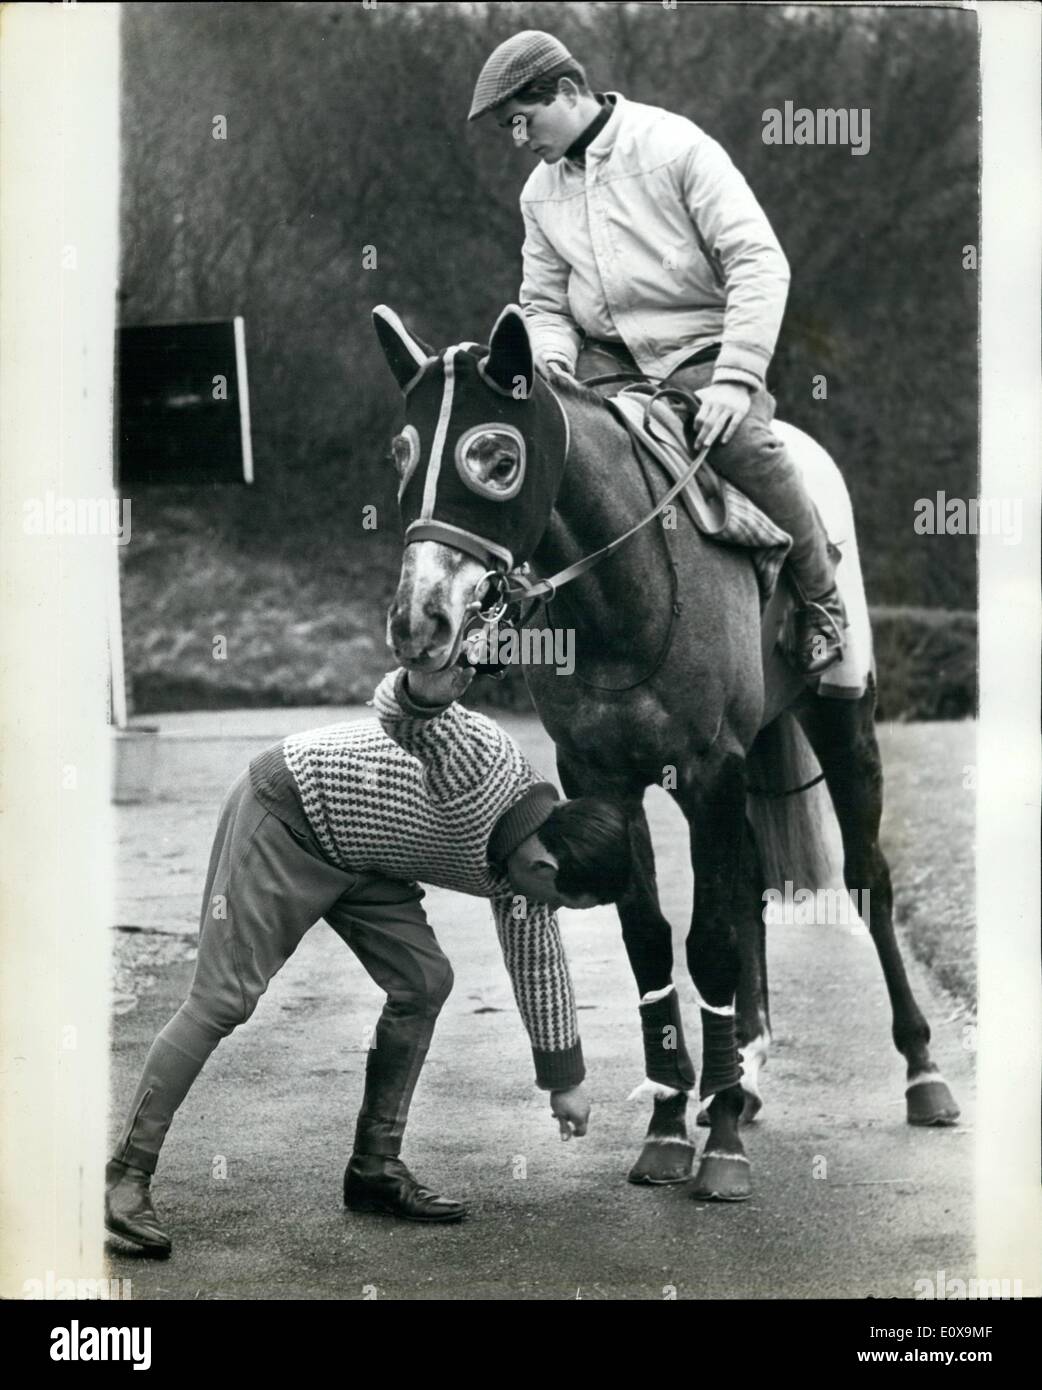 Le 12 décembre 1965 - Dougie Petit Jockey américain ici en vacances. : Dougie Petit, champion de l'Amérique, jockey est plus ici en vacances Banque D'Images